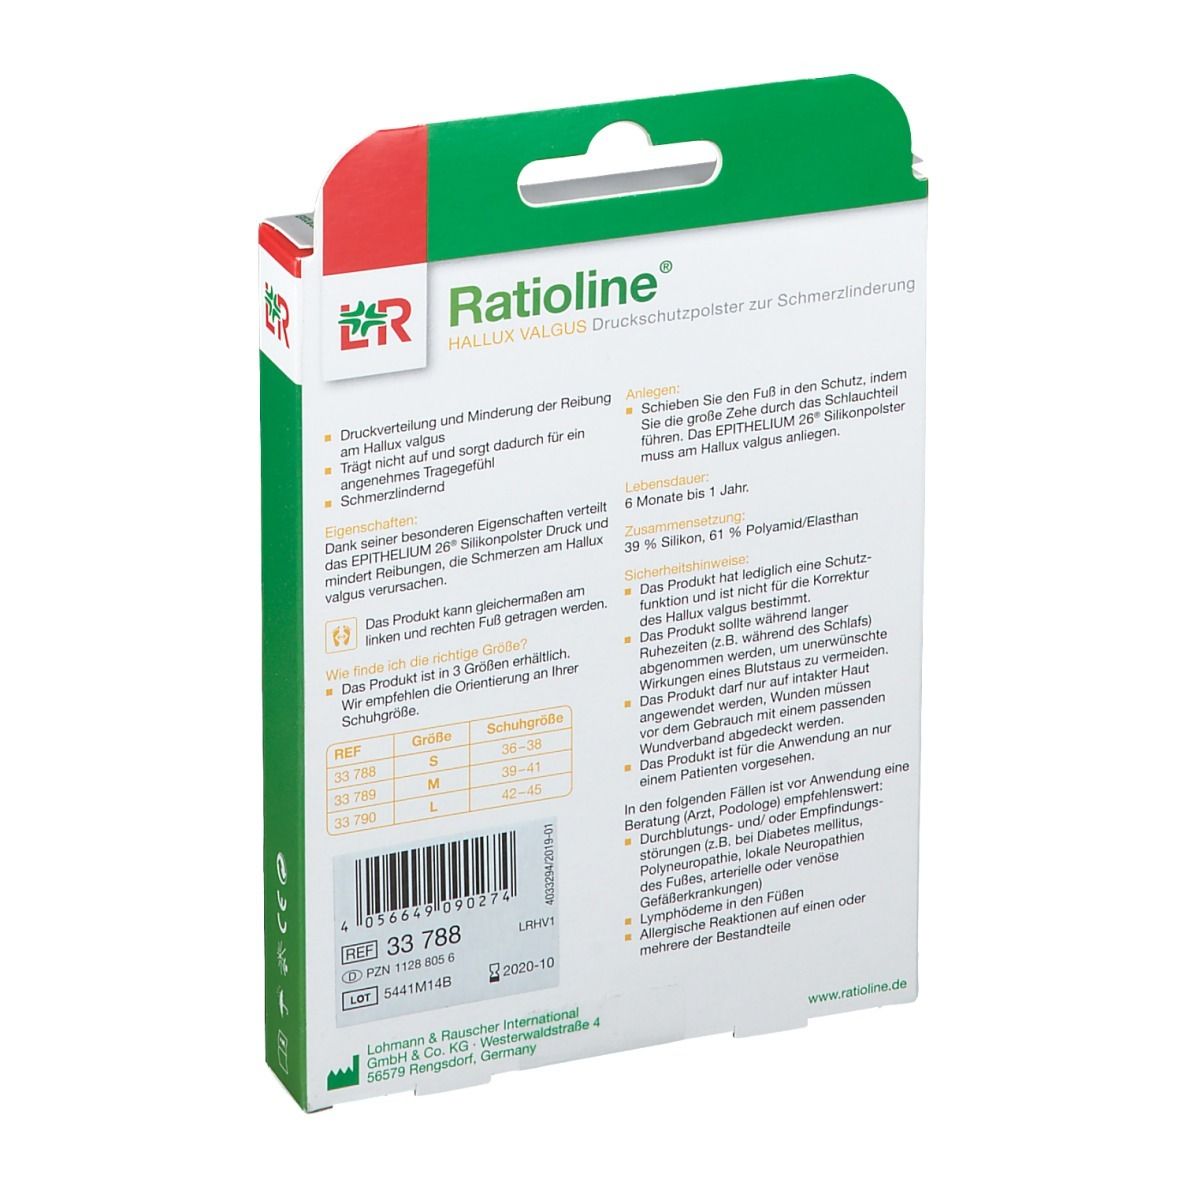 Ratioline® Hallux Valgus Druckschutzpolster S